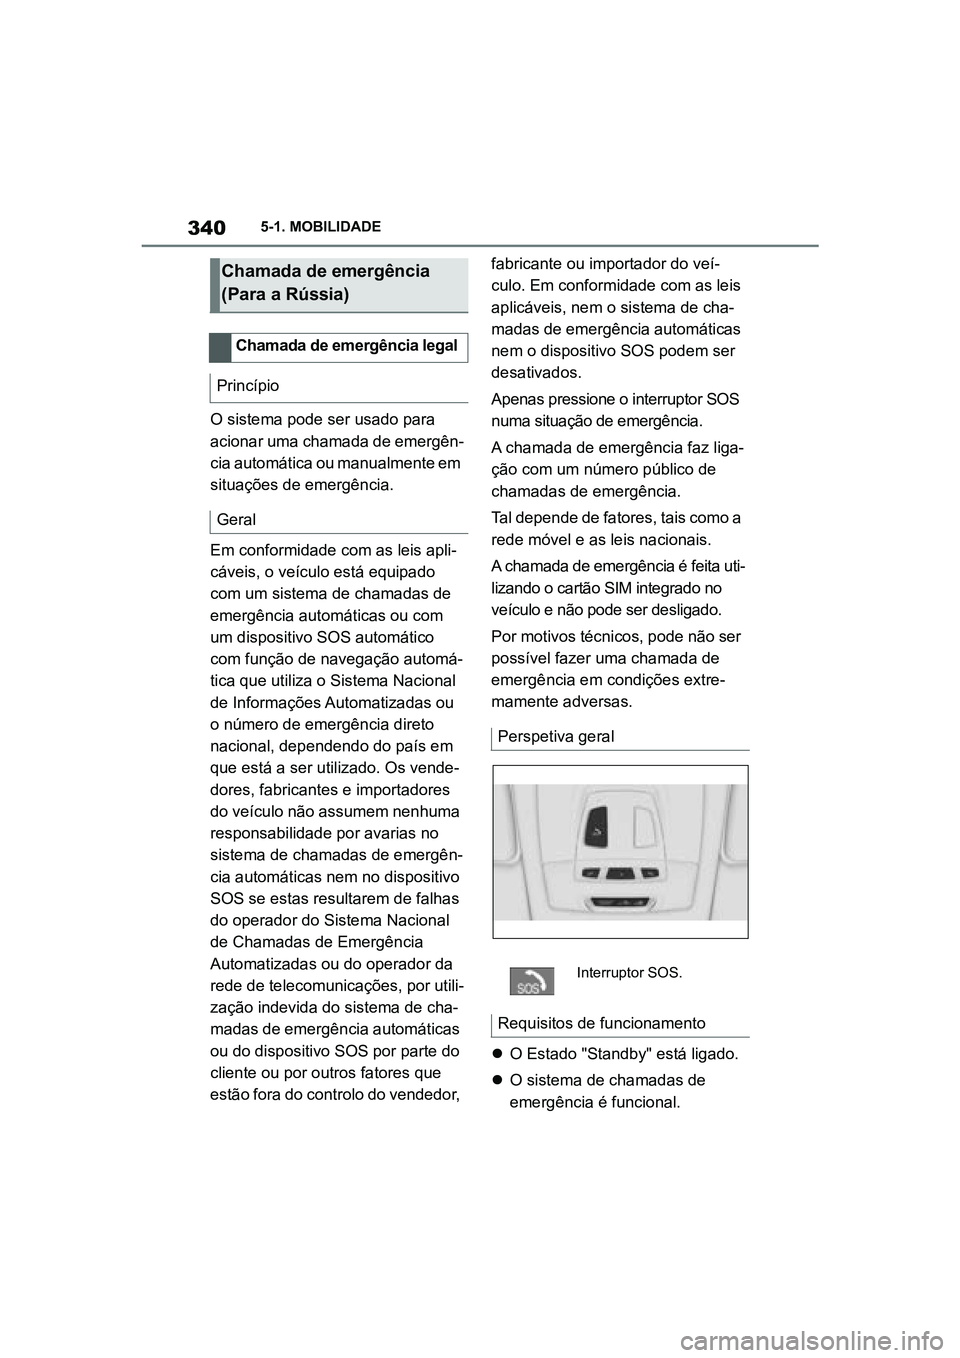 TOYOTA SUPRA 2019  Manual de utilização (in Portuguese) 340
Supra Owner's Manual5-1. MOBILIDADE
O sistema pode ser usado para 
acionar uma chamada de emergên
-
cia automática ou manualmente em 
si
 tuações de emergência. 
Em conformidade com as le